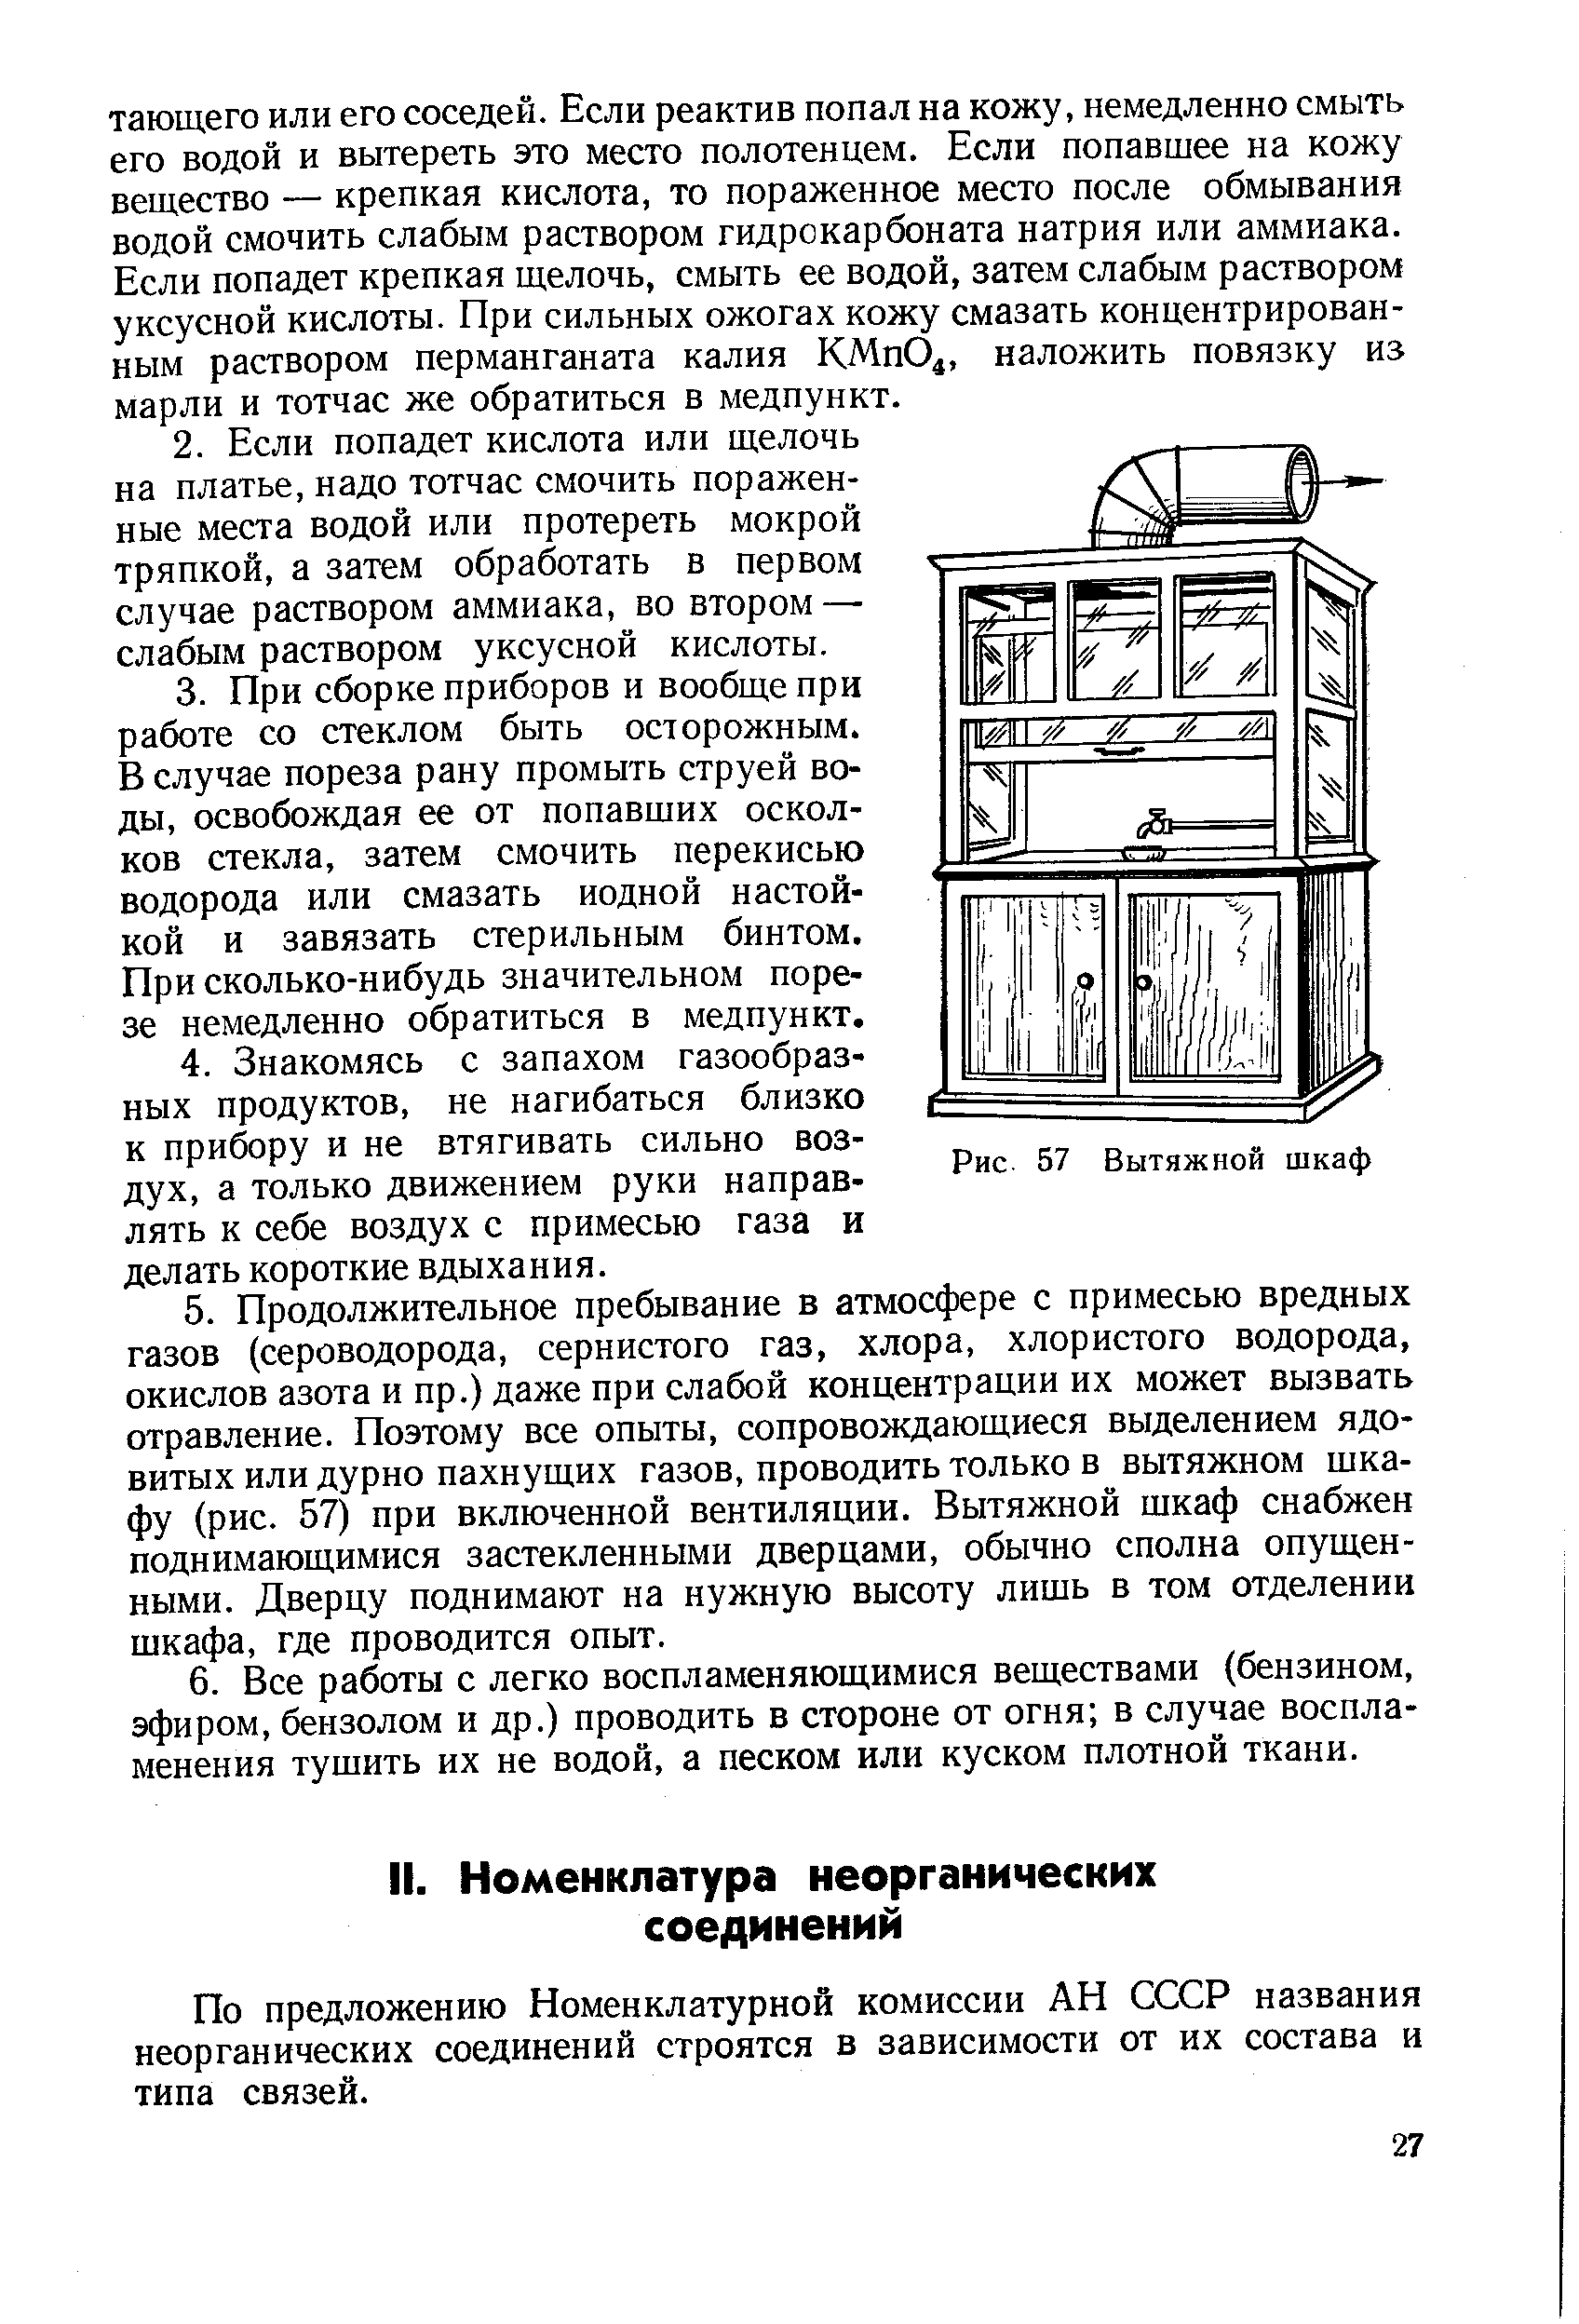 По предложению Номенклатурной комиссии АН СССР названия неорганических соединений строятся в зависимости от их состава и типа связей.